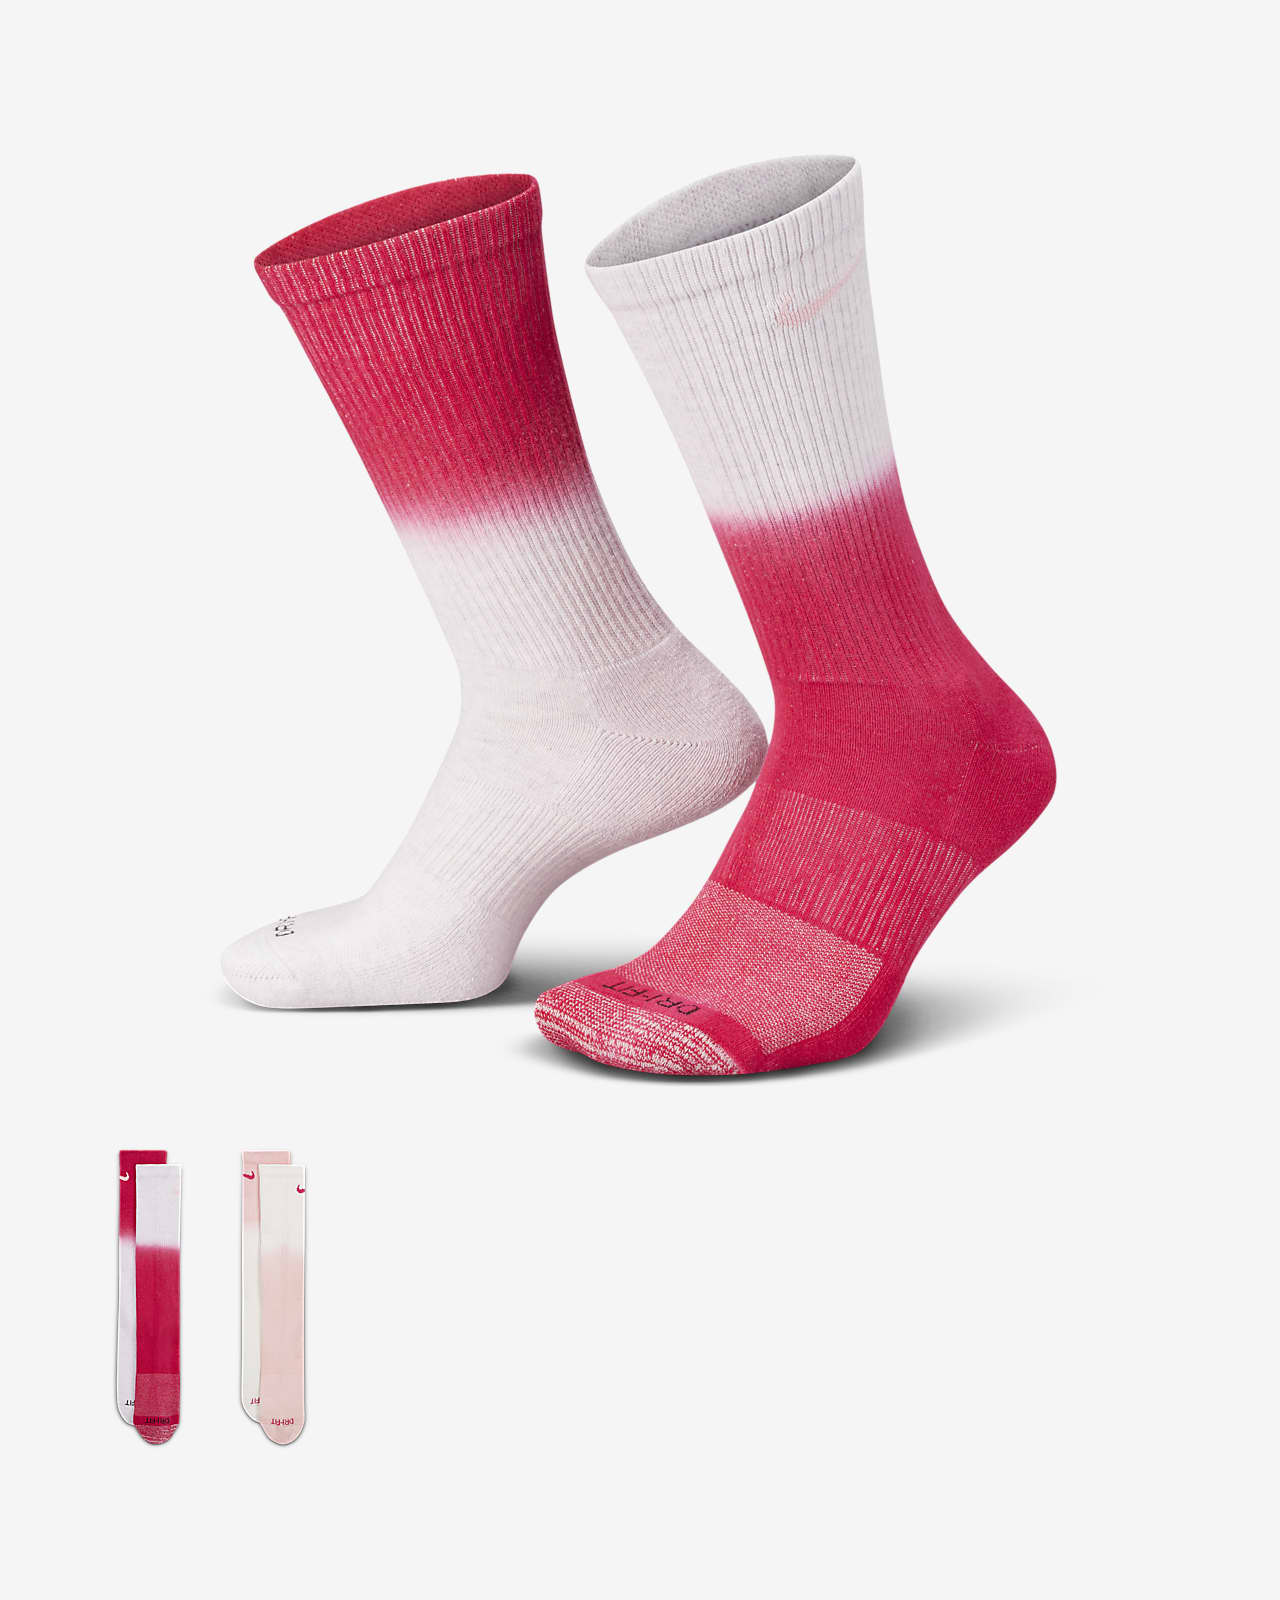 Κάλτσες μεσαίου ύψους με αντικραδασμική προστασία Nike Everyday Plus (δύο ζευγάρια)